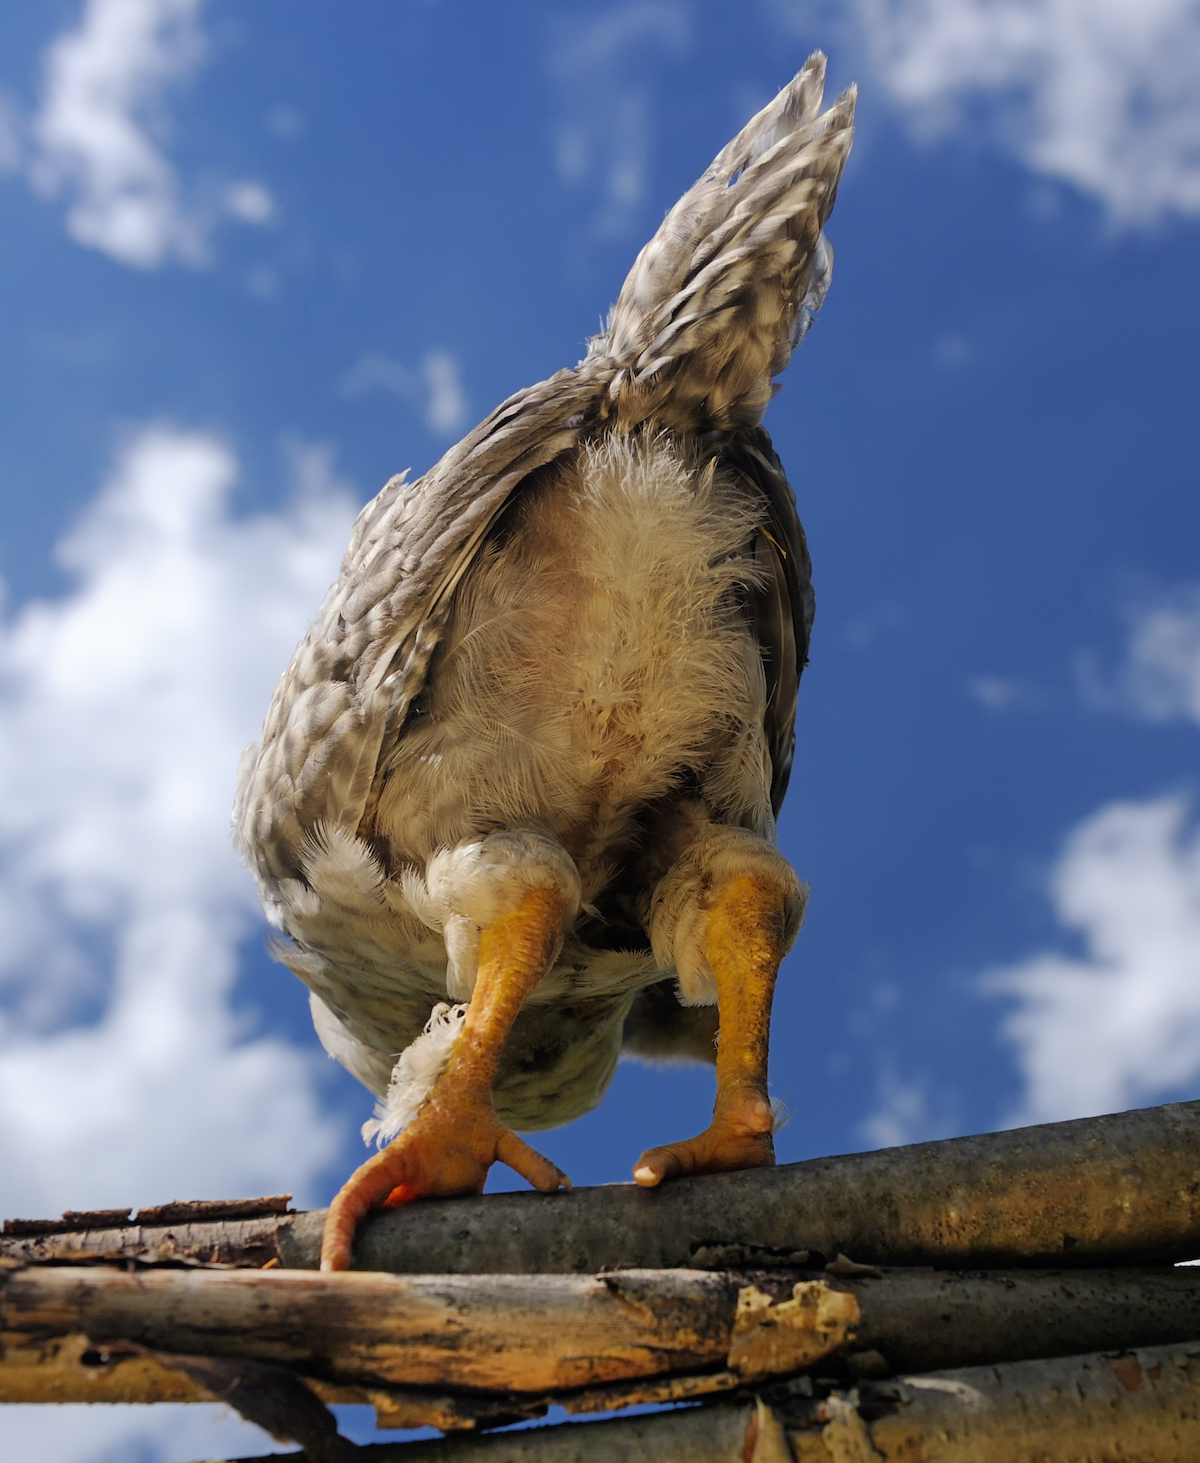 Et mon cul, c'est du poulet © Imageman shutterstock